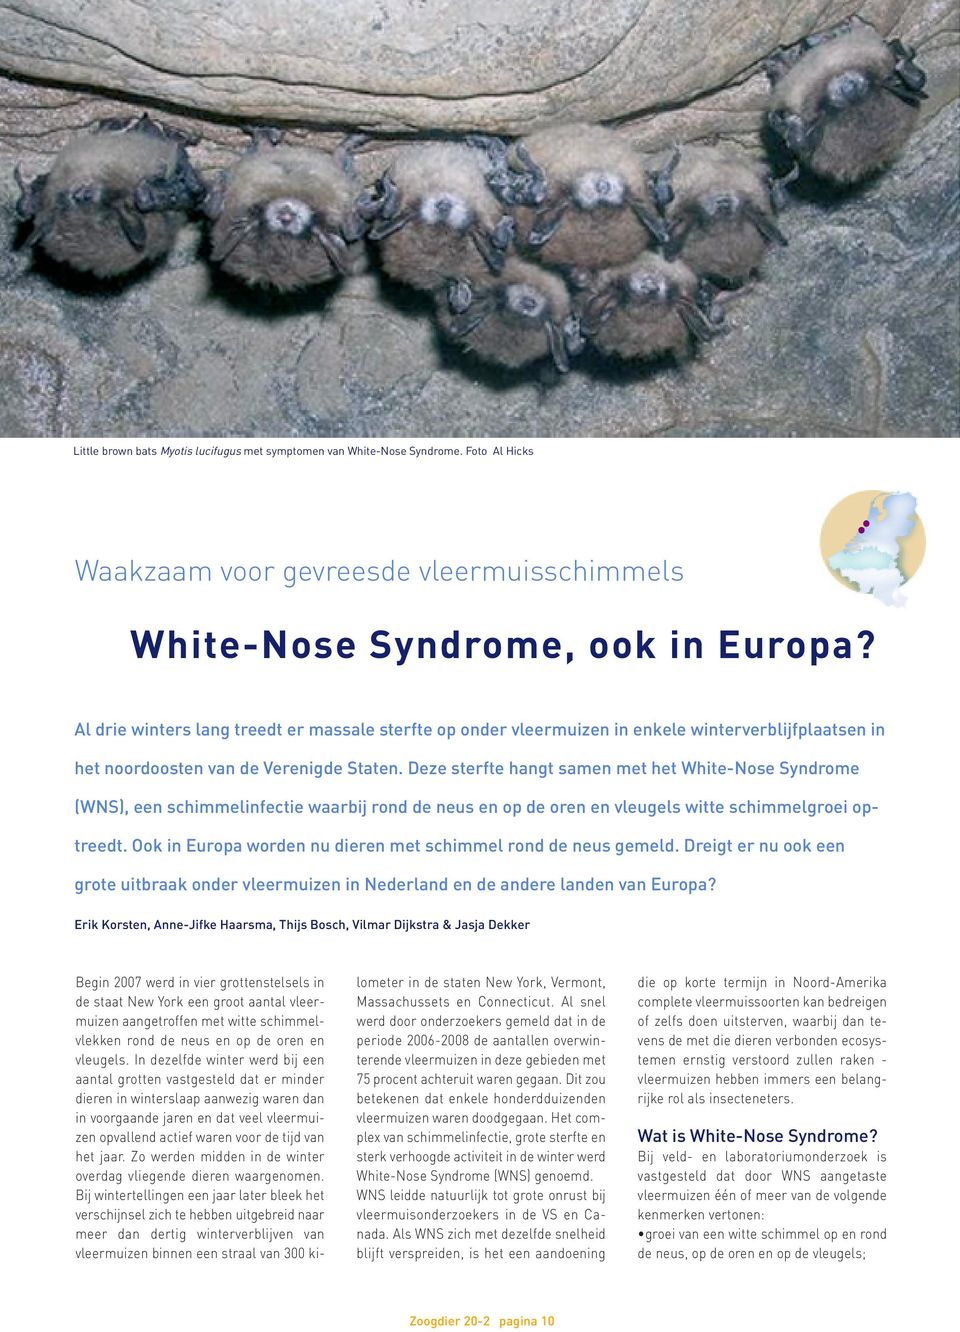 Deze sterfte hangt samen met het White-Nose Syndrome (WNS), een schimmelinfectie waarbij rond de neus en op de oren en vleugels witte schimmelgroei optreedt.